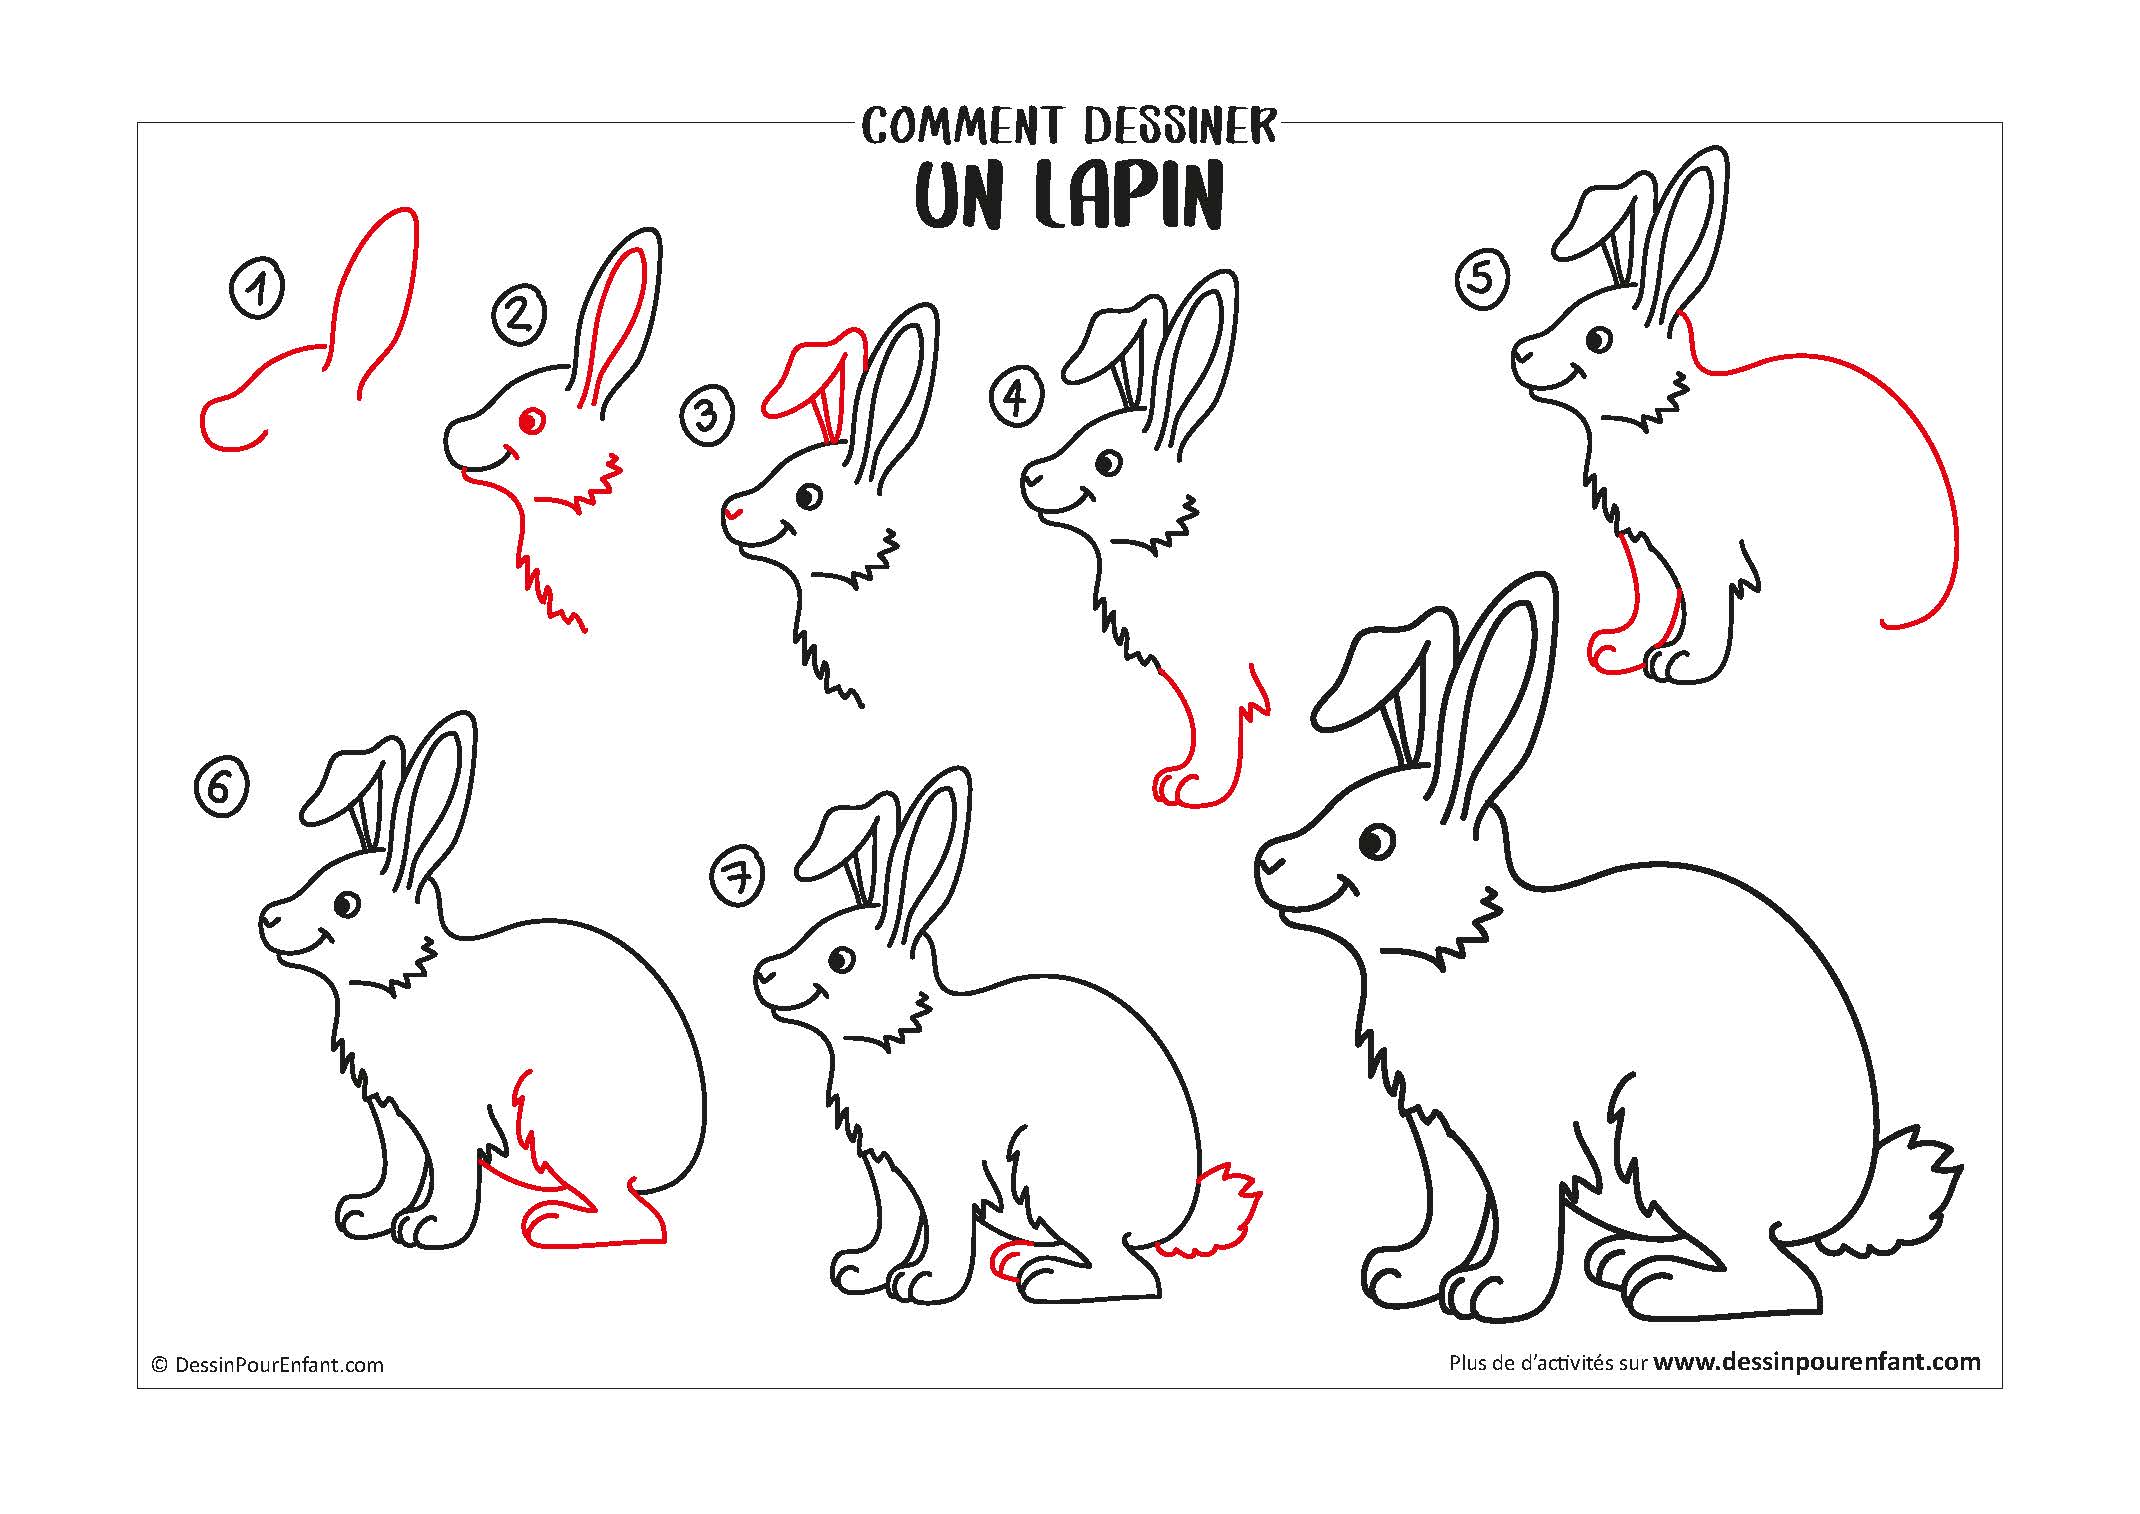 Comment dessiner un lapin en 7 étapes - Dessin pour enfant